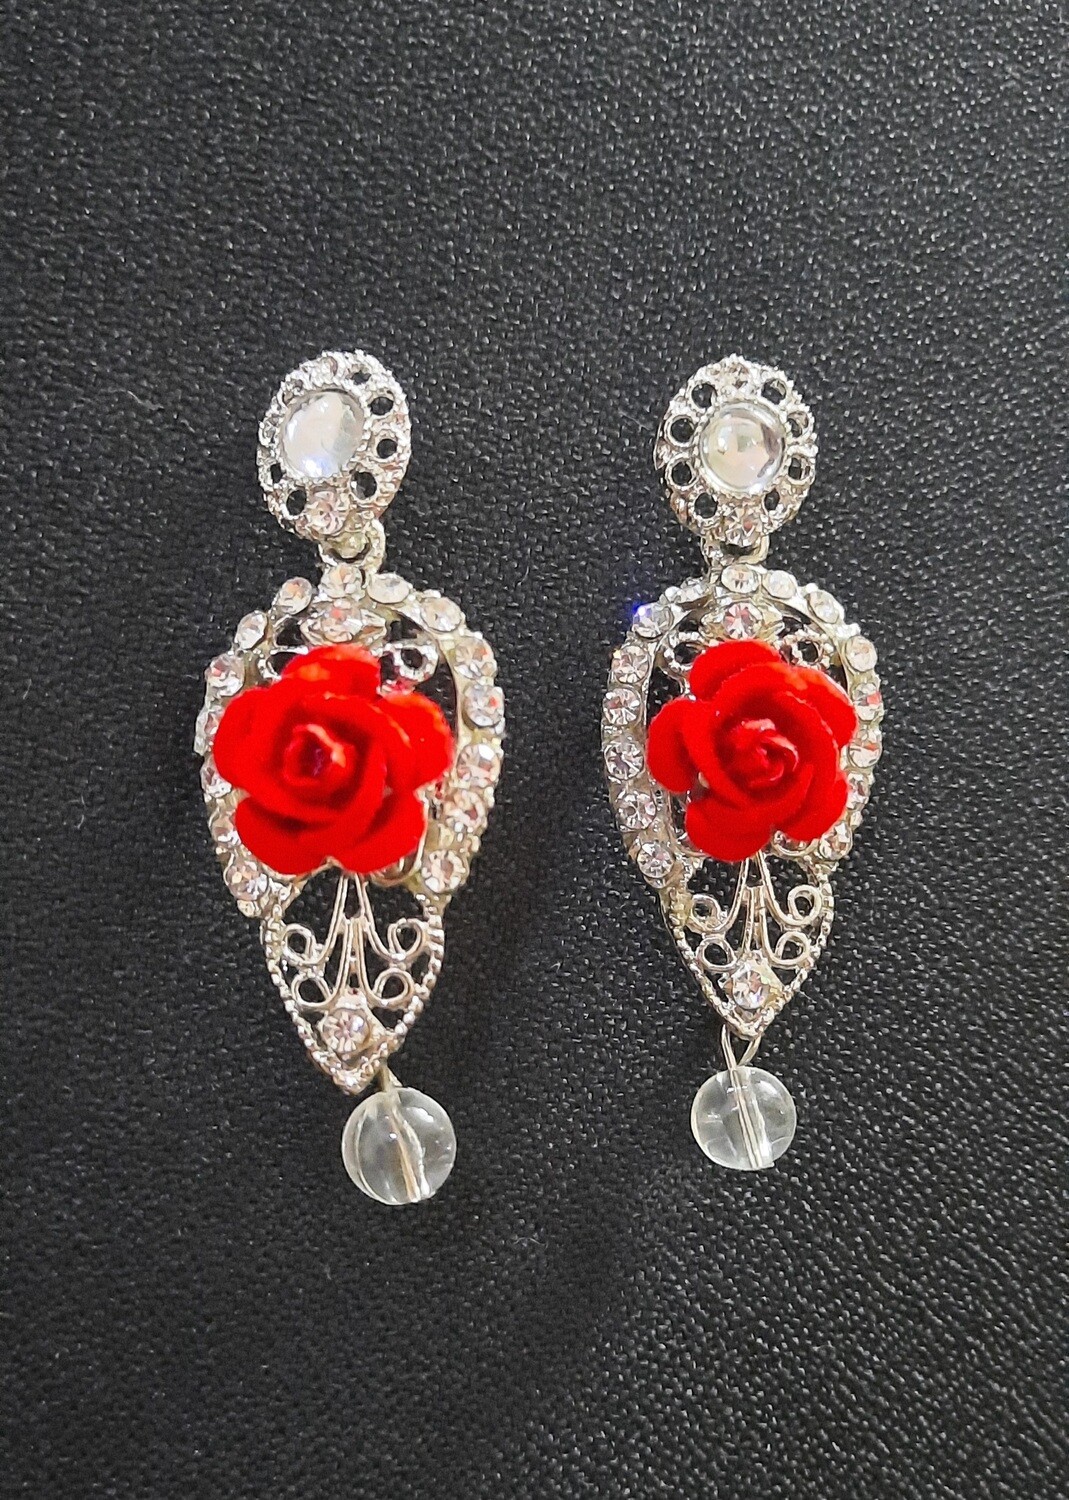 Studded Rose Earrings